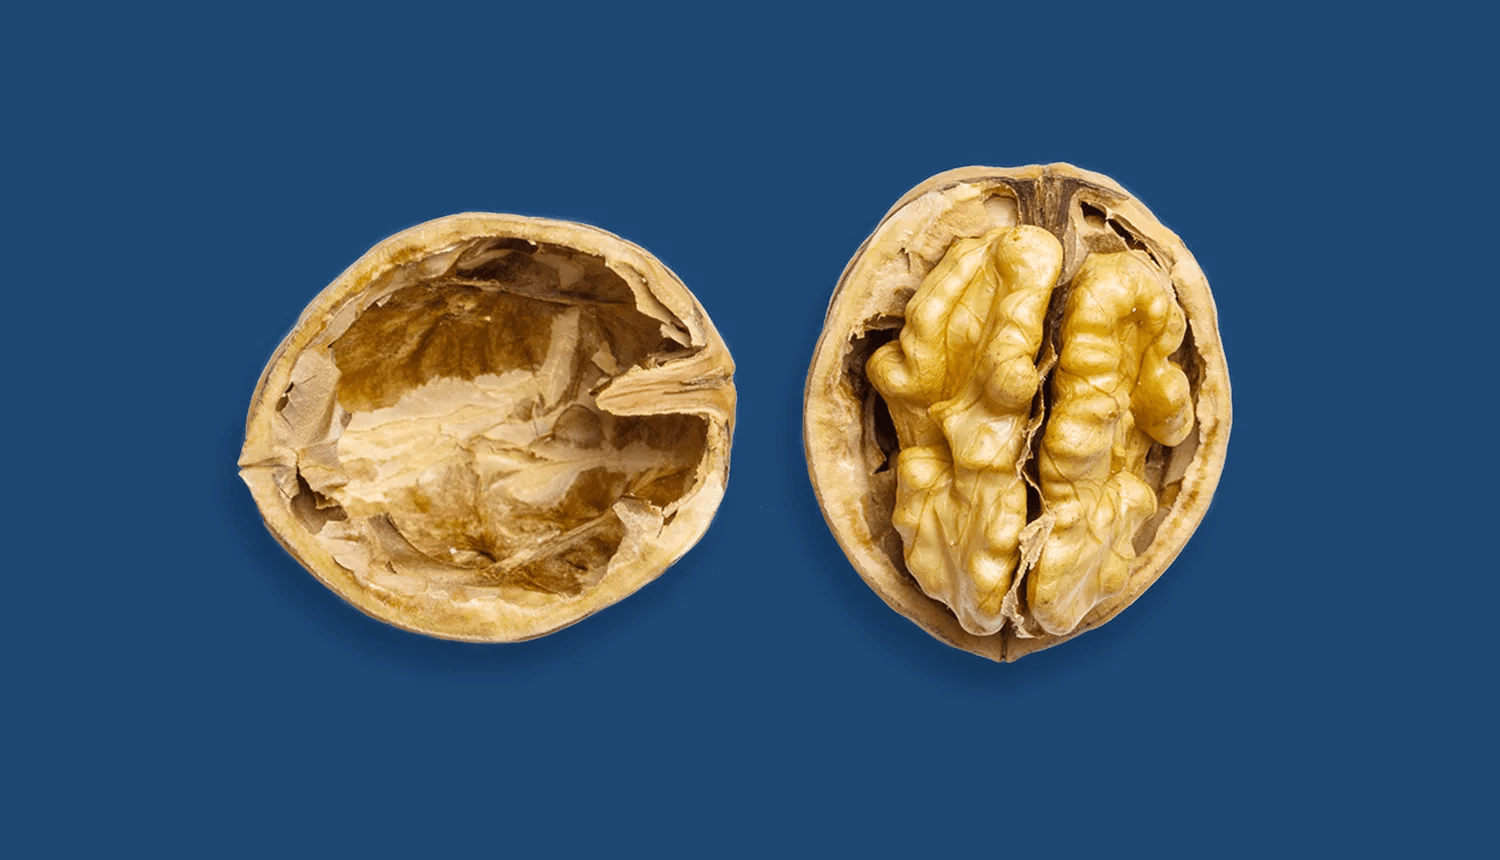 Novembro Azul: saúde do homem e câncer de próstata - Dr. JONES. Em fundo azul, imagem de uma noz partida, uma vez que a próstata se assemelha a esse fruto.